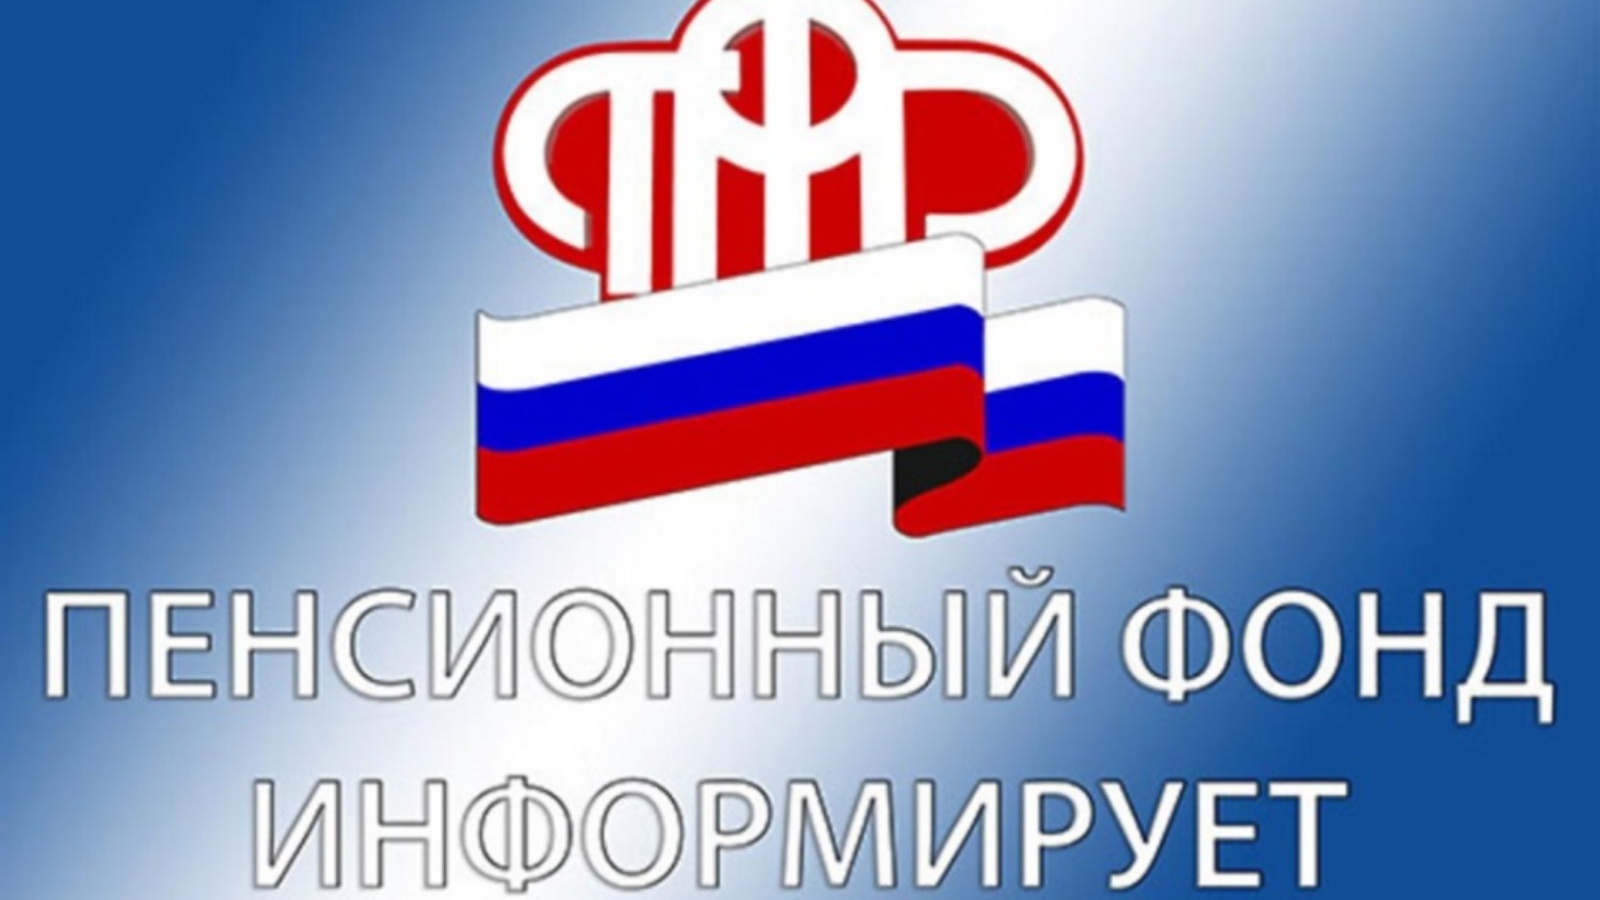 Пенсионный фонд российской федерации информация